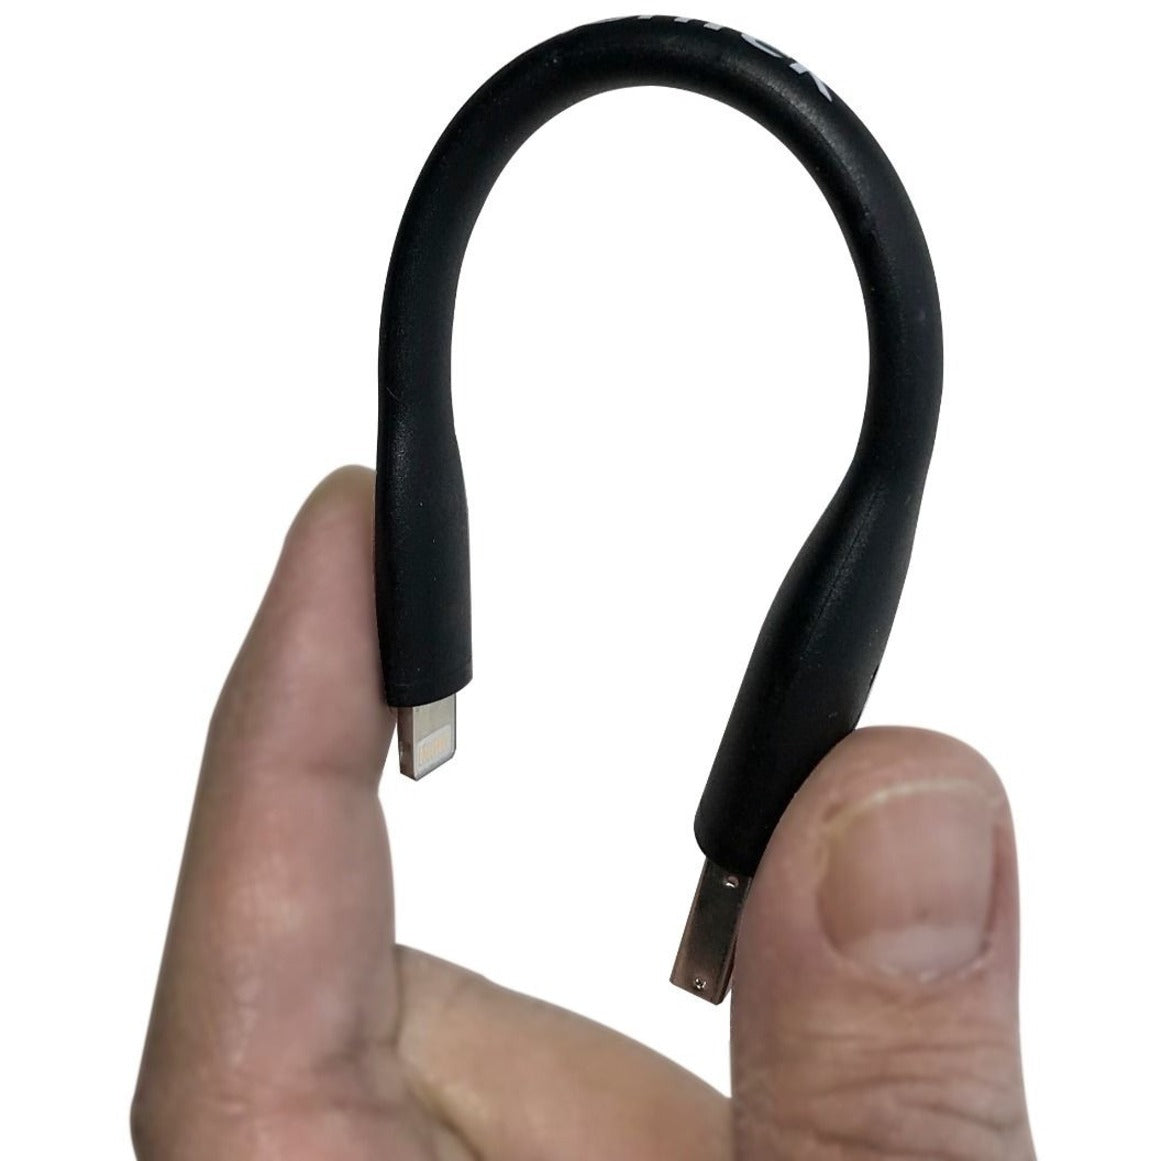 VisionTek Lightning to USB Flex Cable - Black (901096)